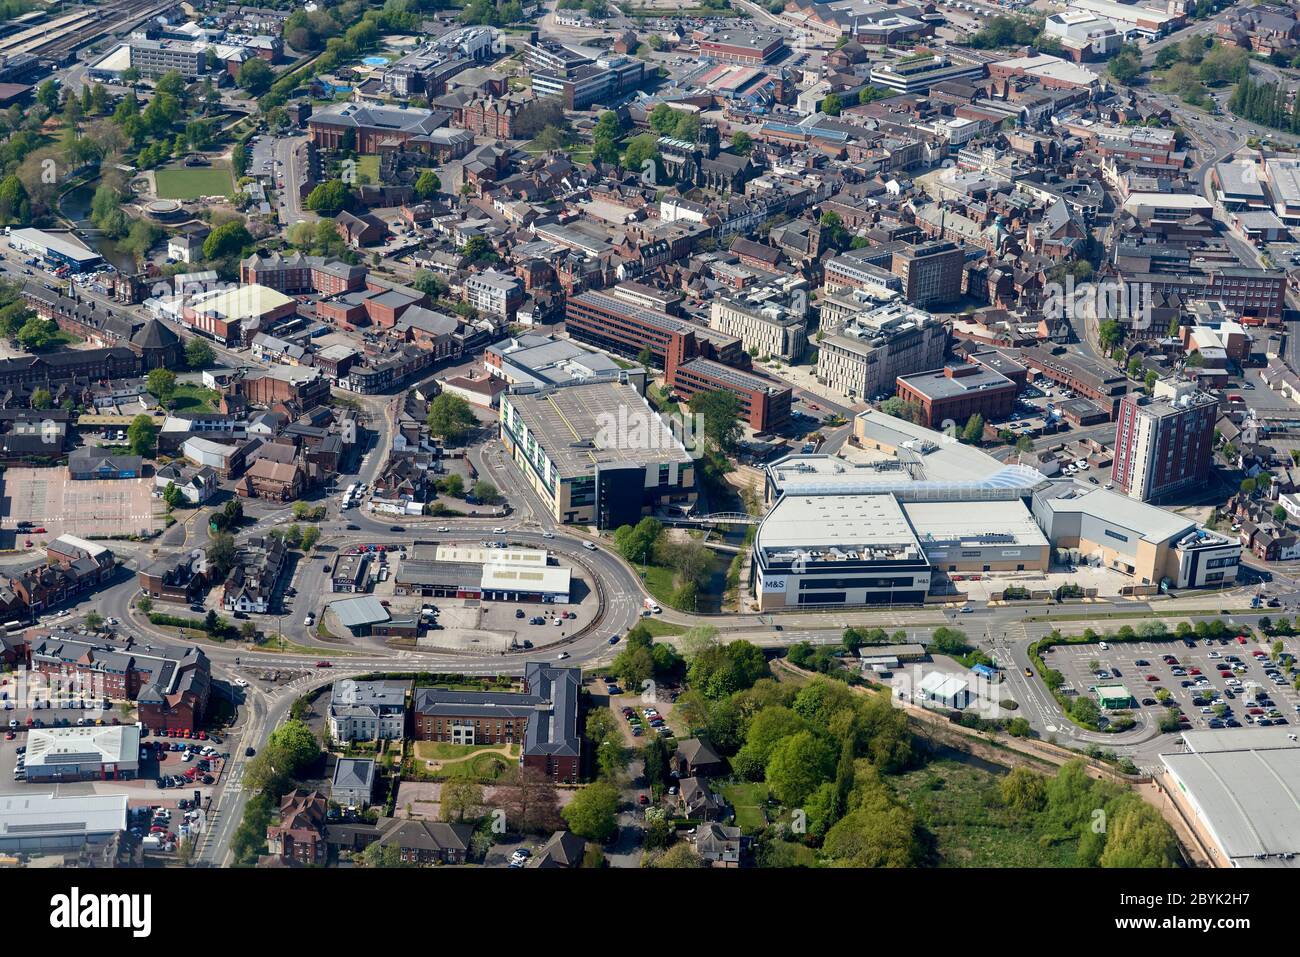 Une vue aérienne du centre commercial Stafford, Staffordshire, Angleterre, parkings vides sous le coronavirus Lockdown Banque D'Images